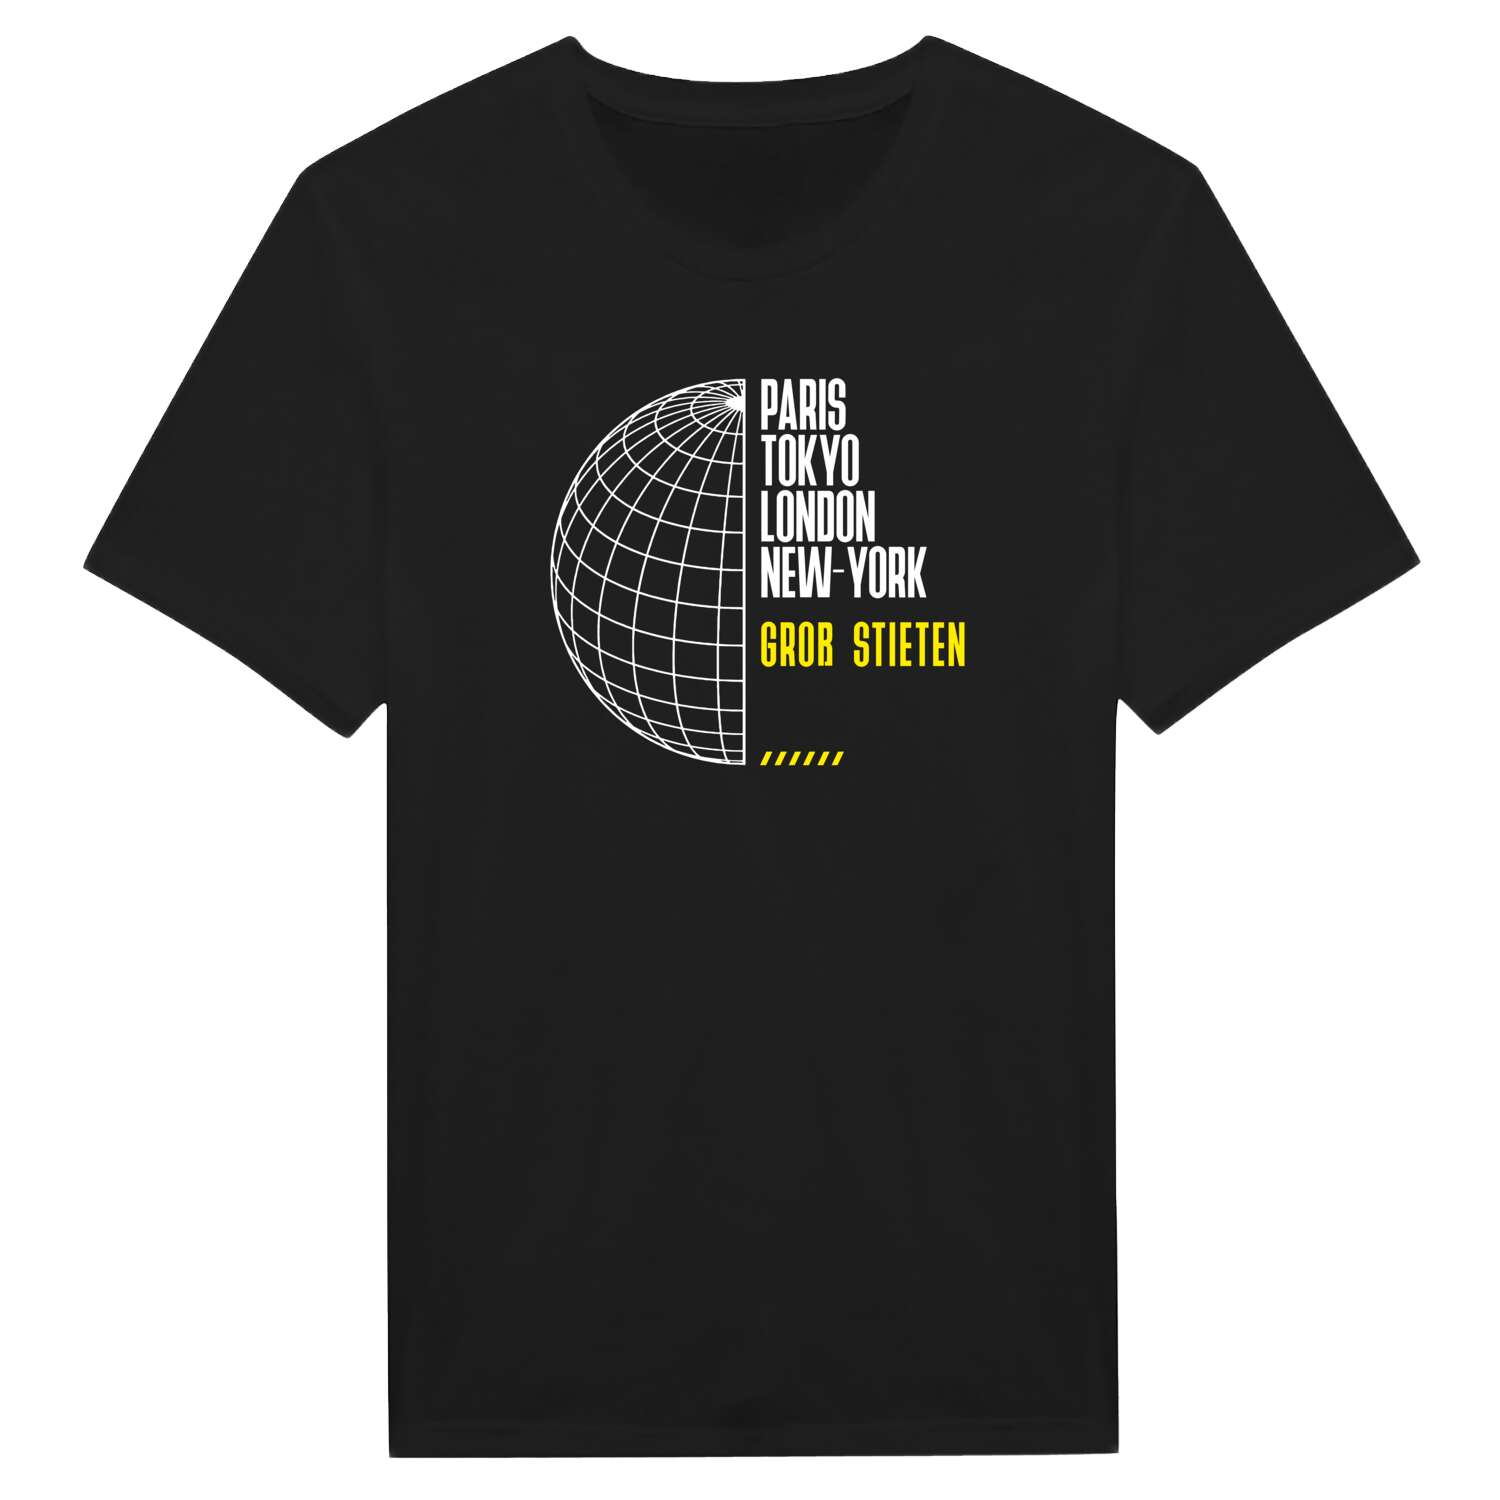 Groß Stieten T-Shirt »Paris Tokyo London«